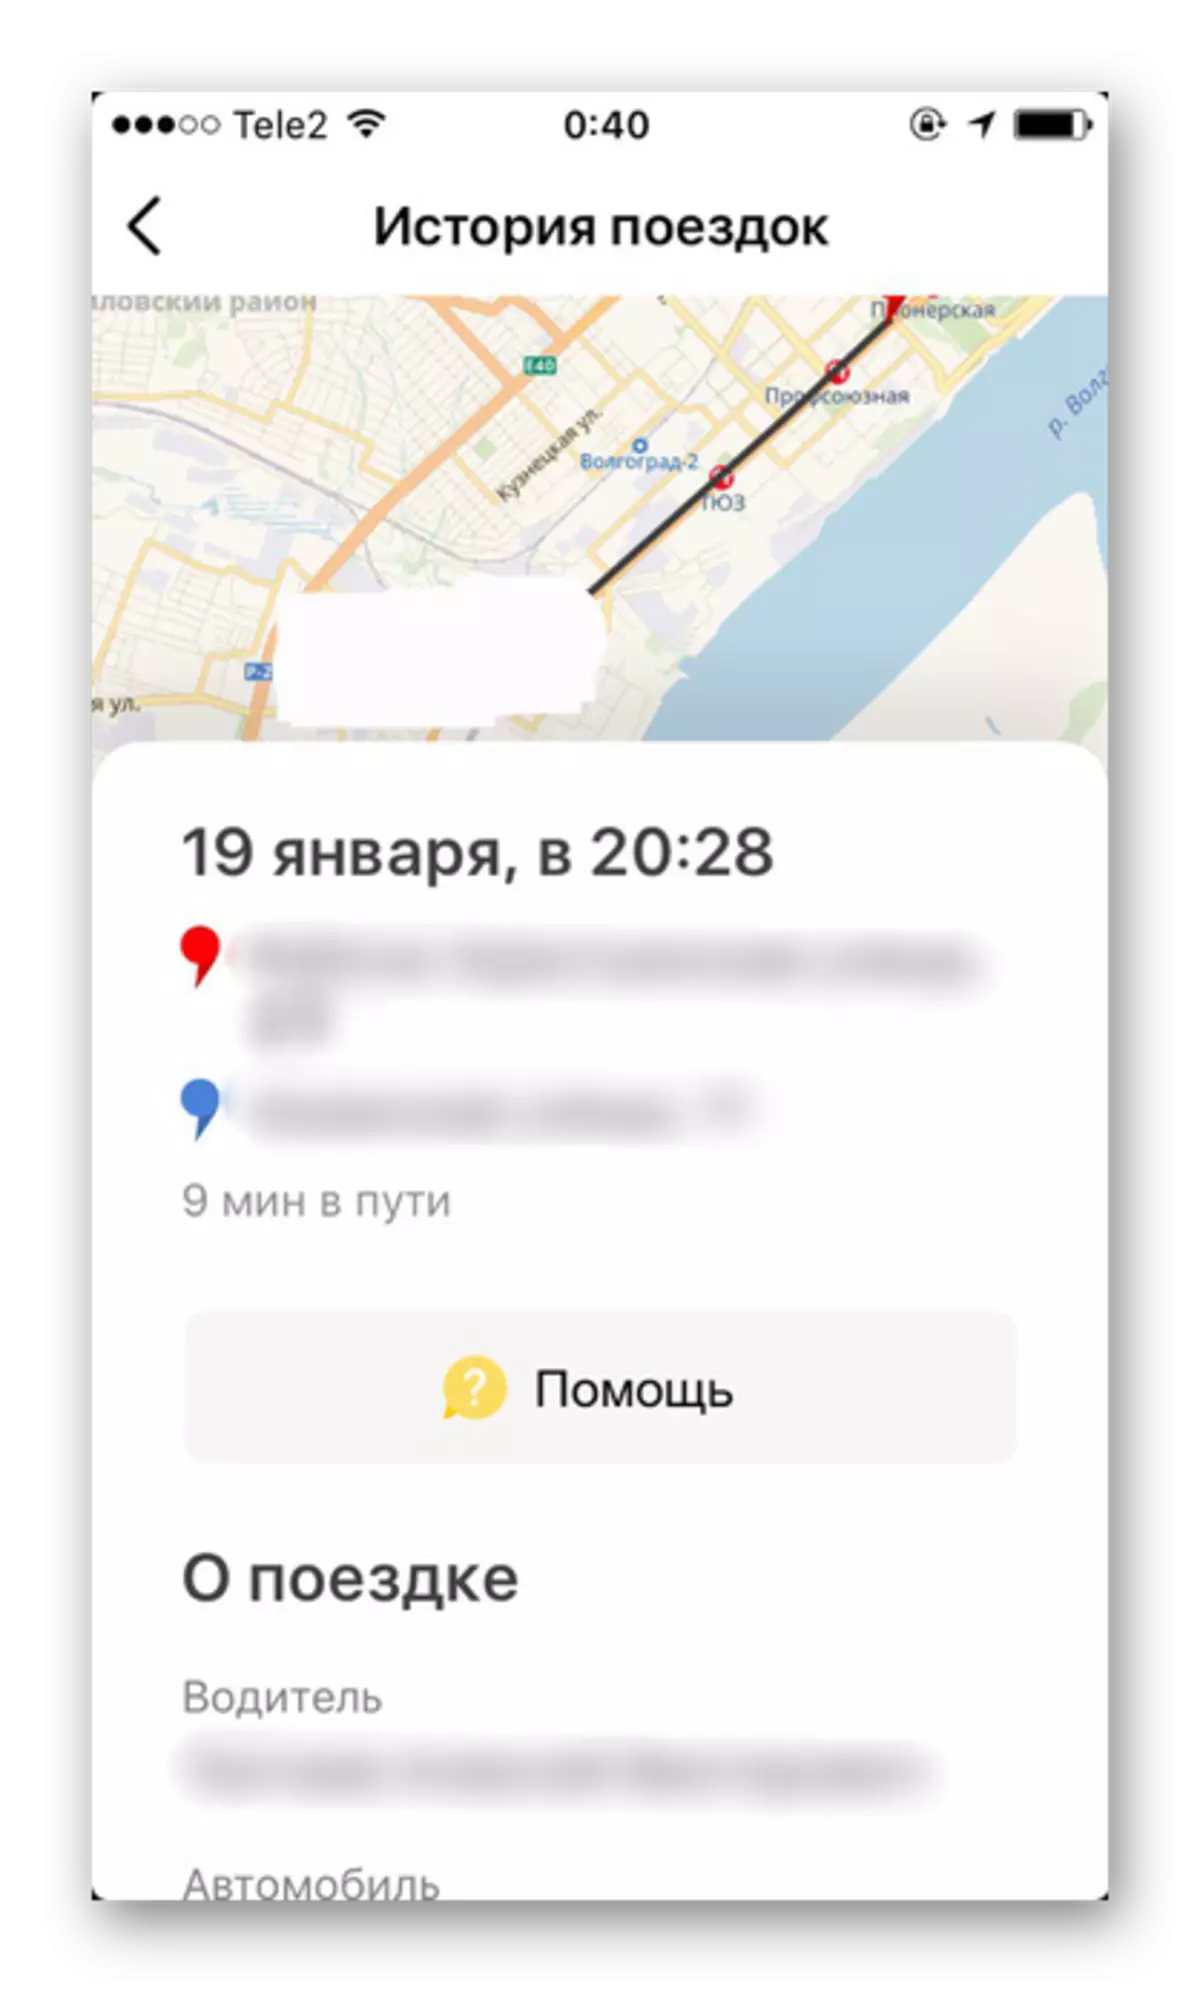 Oddelek s potovalno zgodovino in podrobne informacije za vsako naročilo v aplikaciji Yandex.Taxi na iPhone